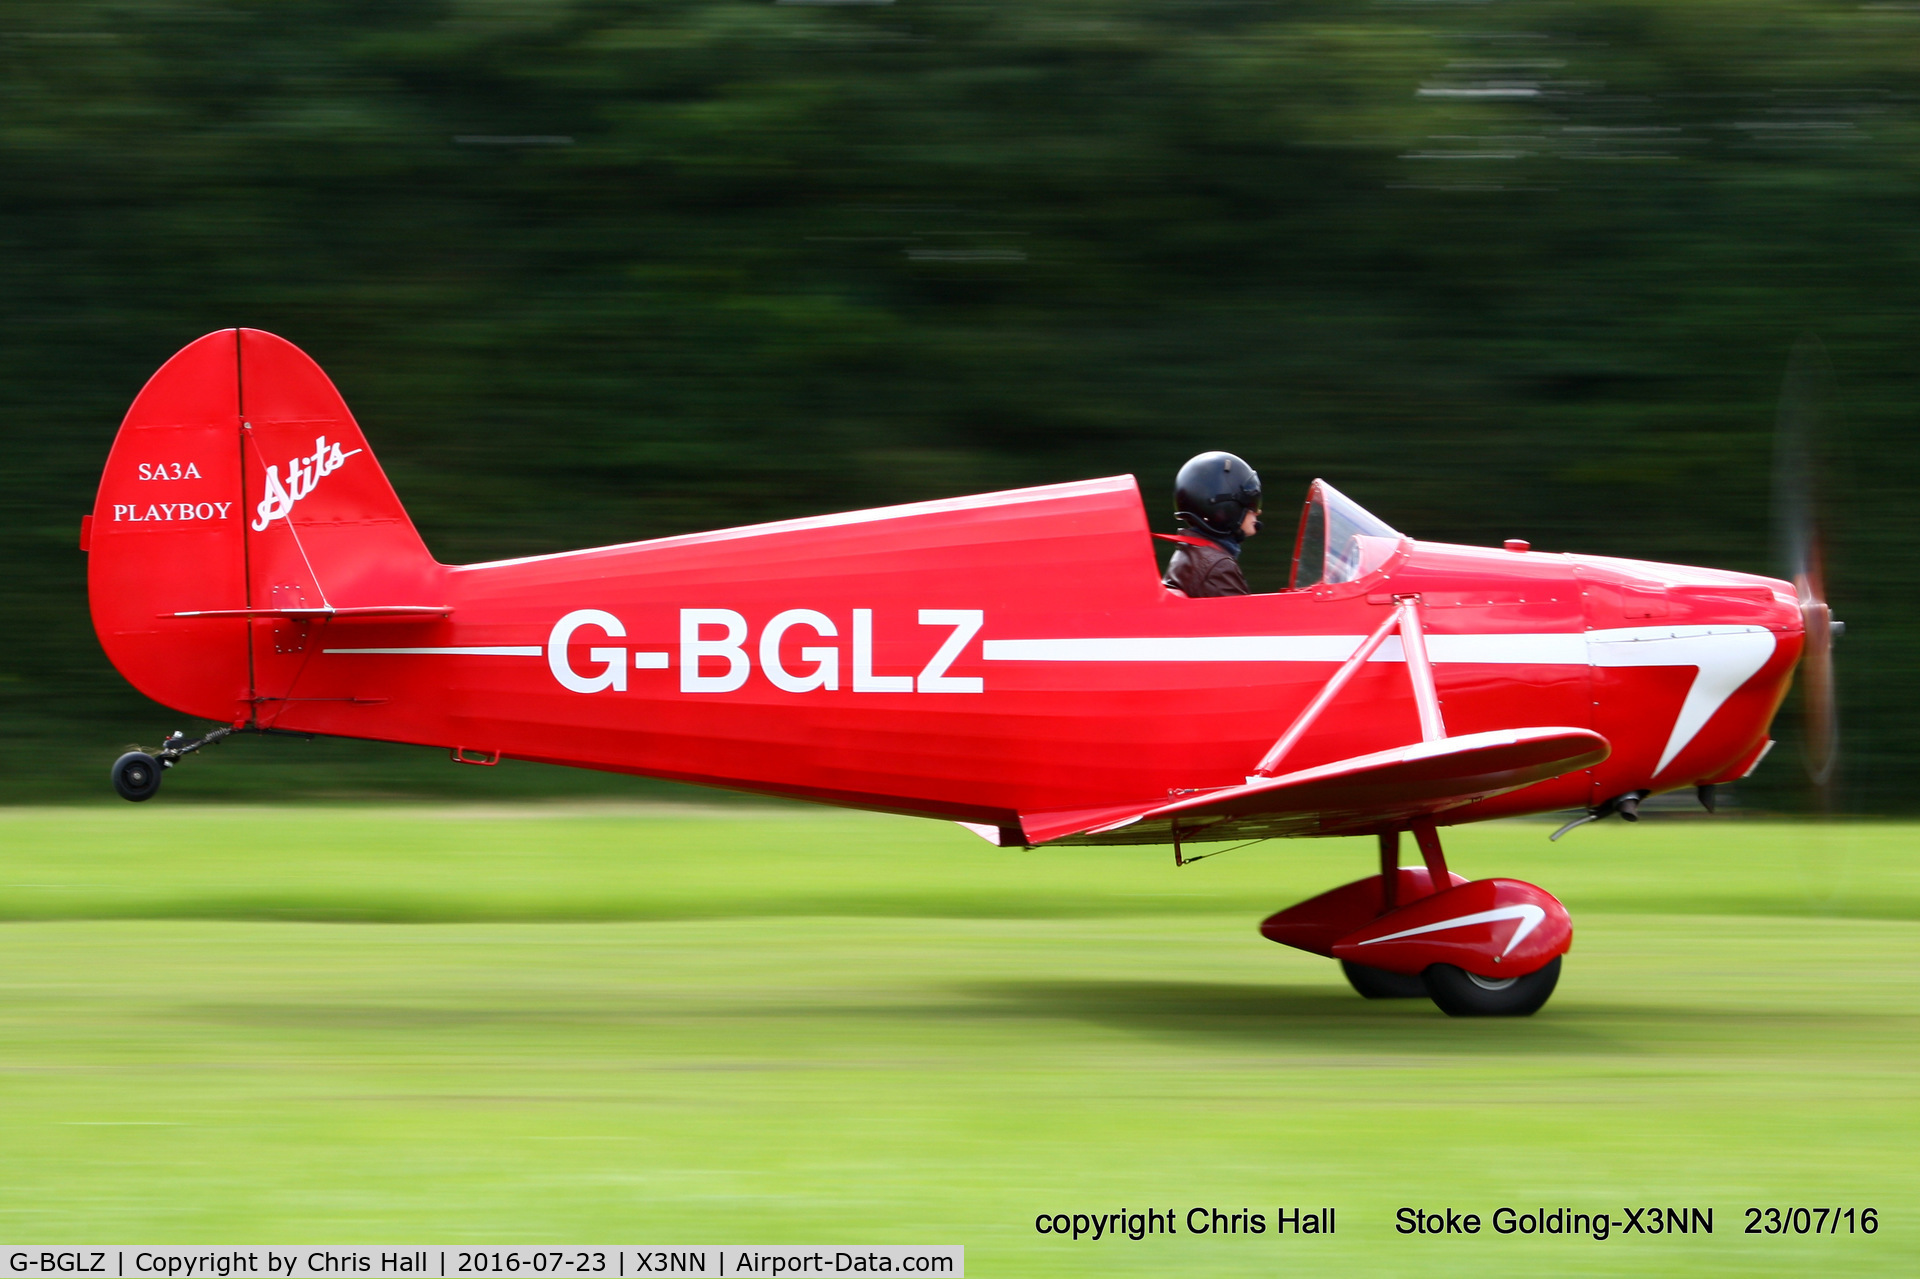 G-BGLZ, 1973 Stits SA-3A Playboy C/N 71-100, Stoke Golding Stakeout 2016